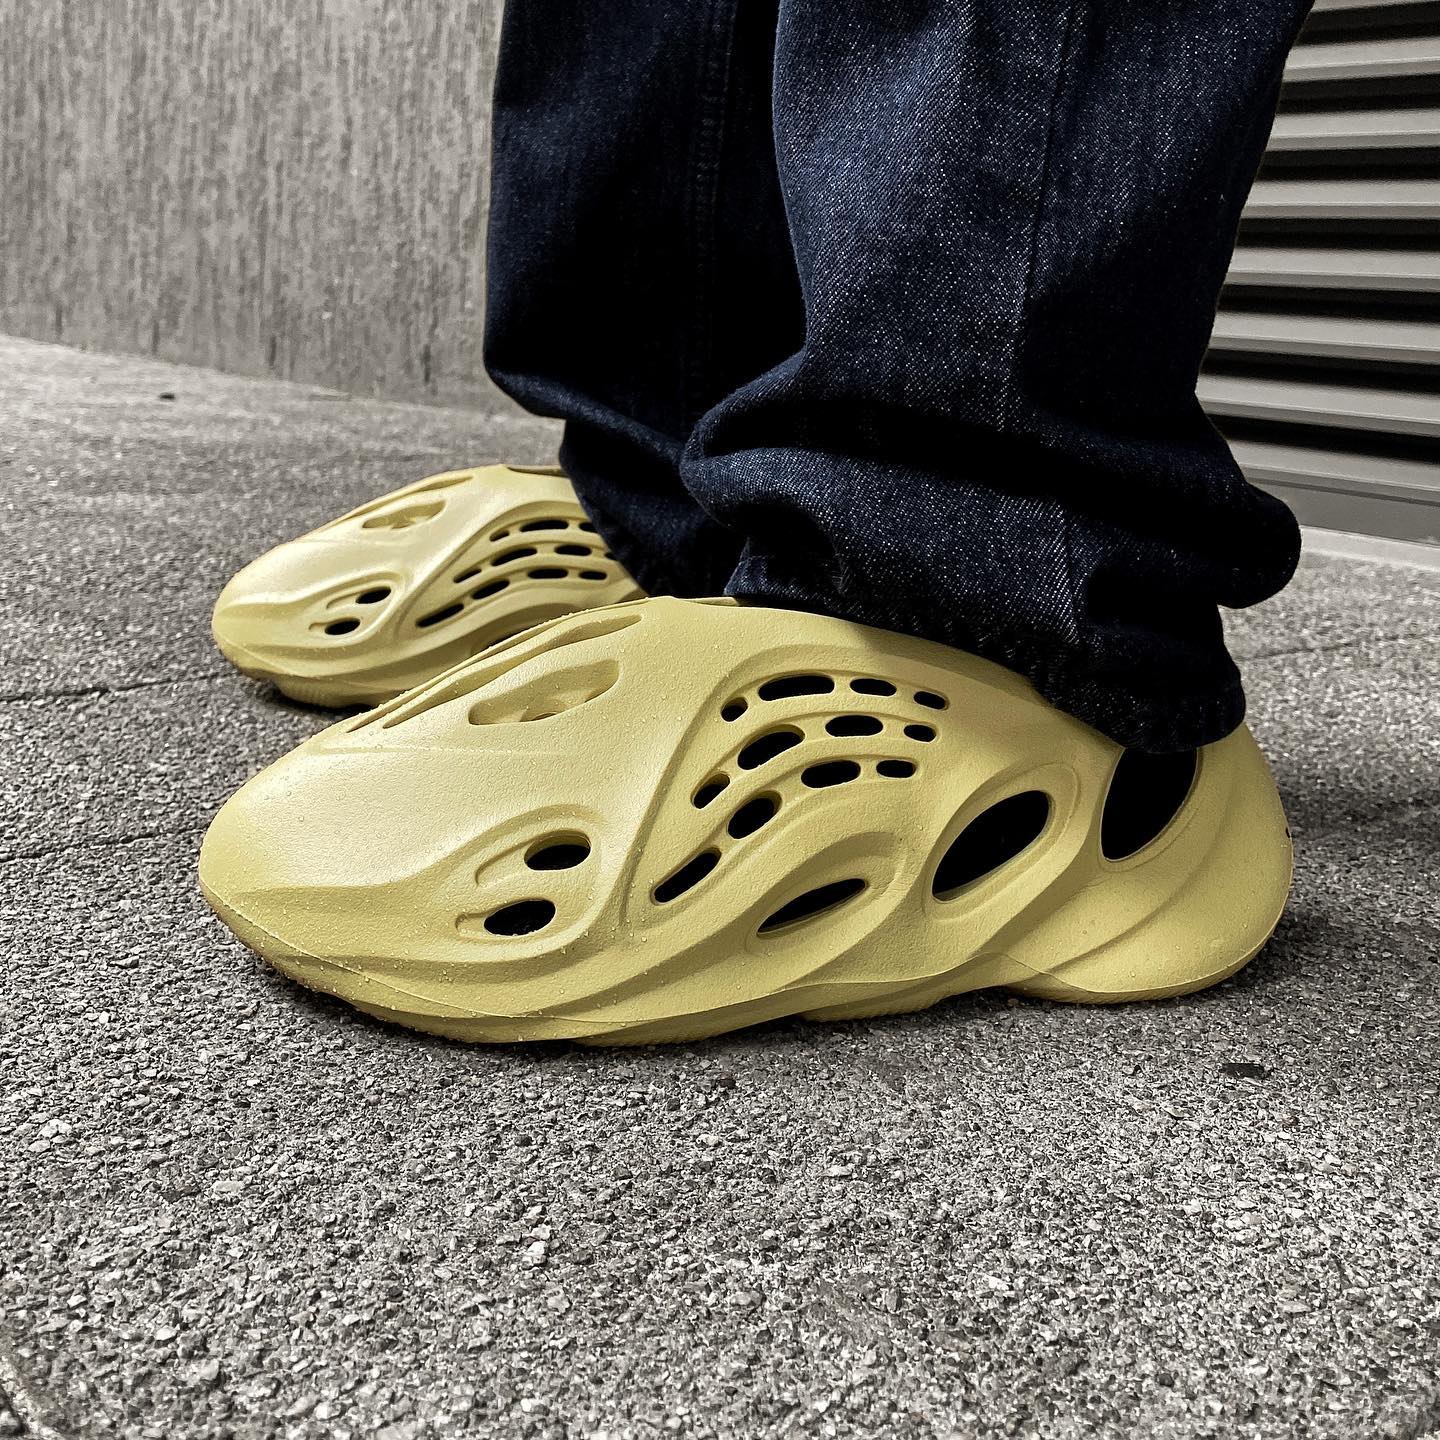 2022新款Yeezy Foam Runner “Sulfur” 硫磺色泡沫跑步鞋 正版细节照 上脚效果图_6